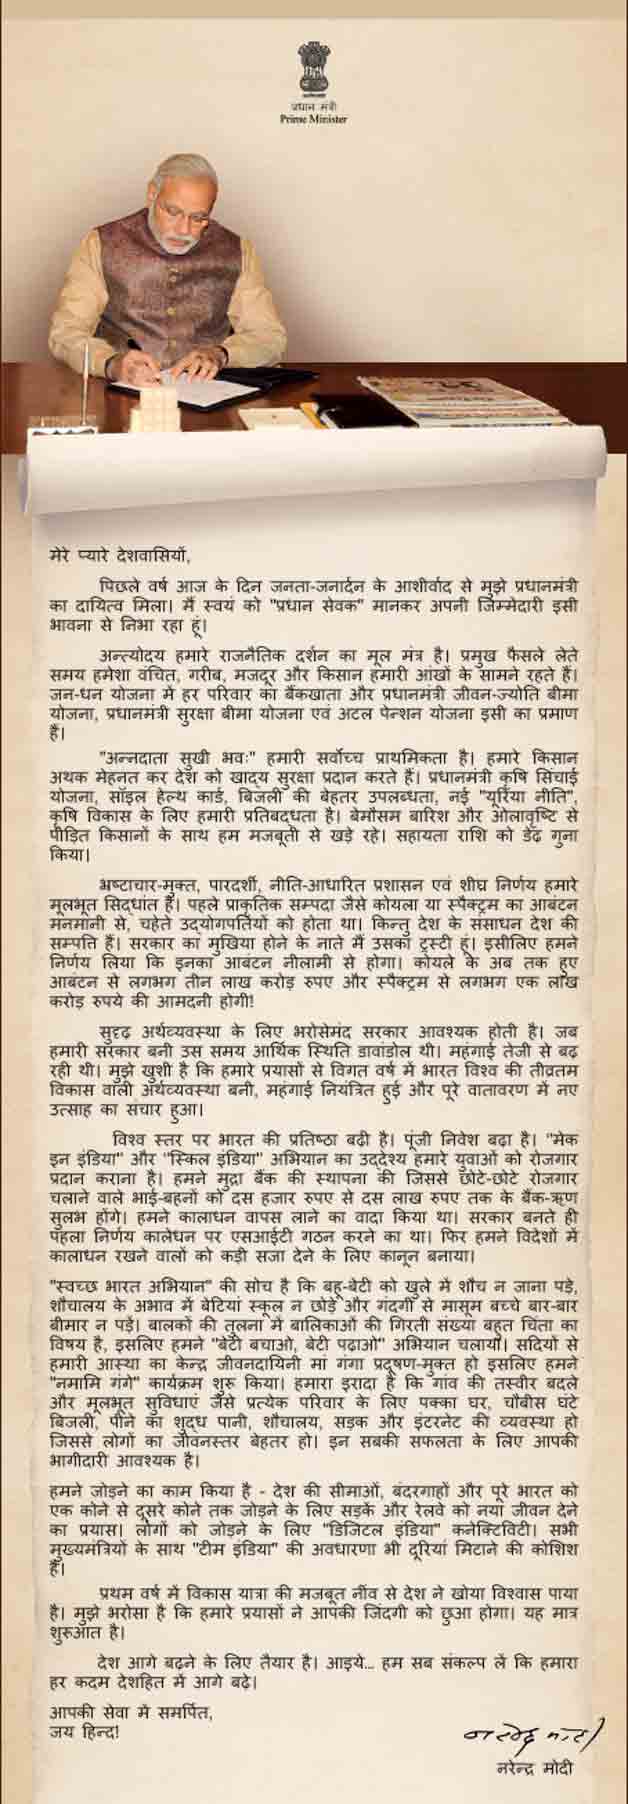 Narendra Modi letter in Hindi